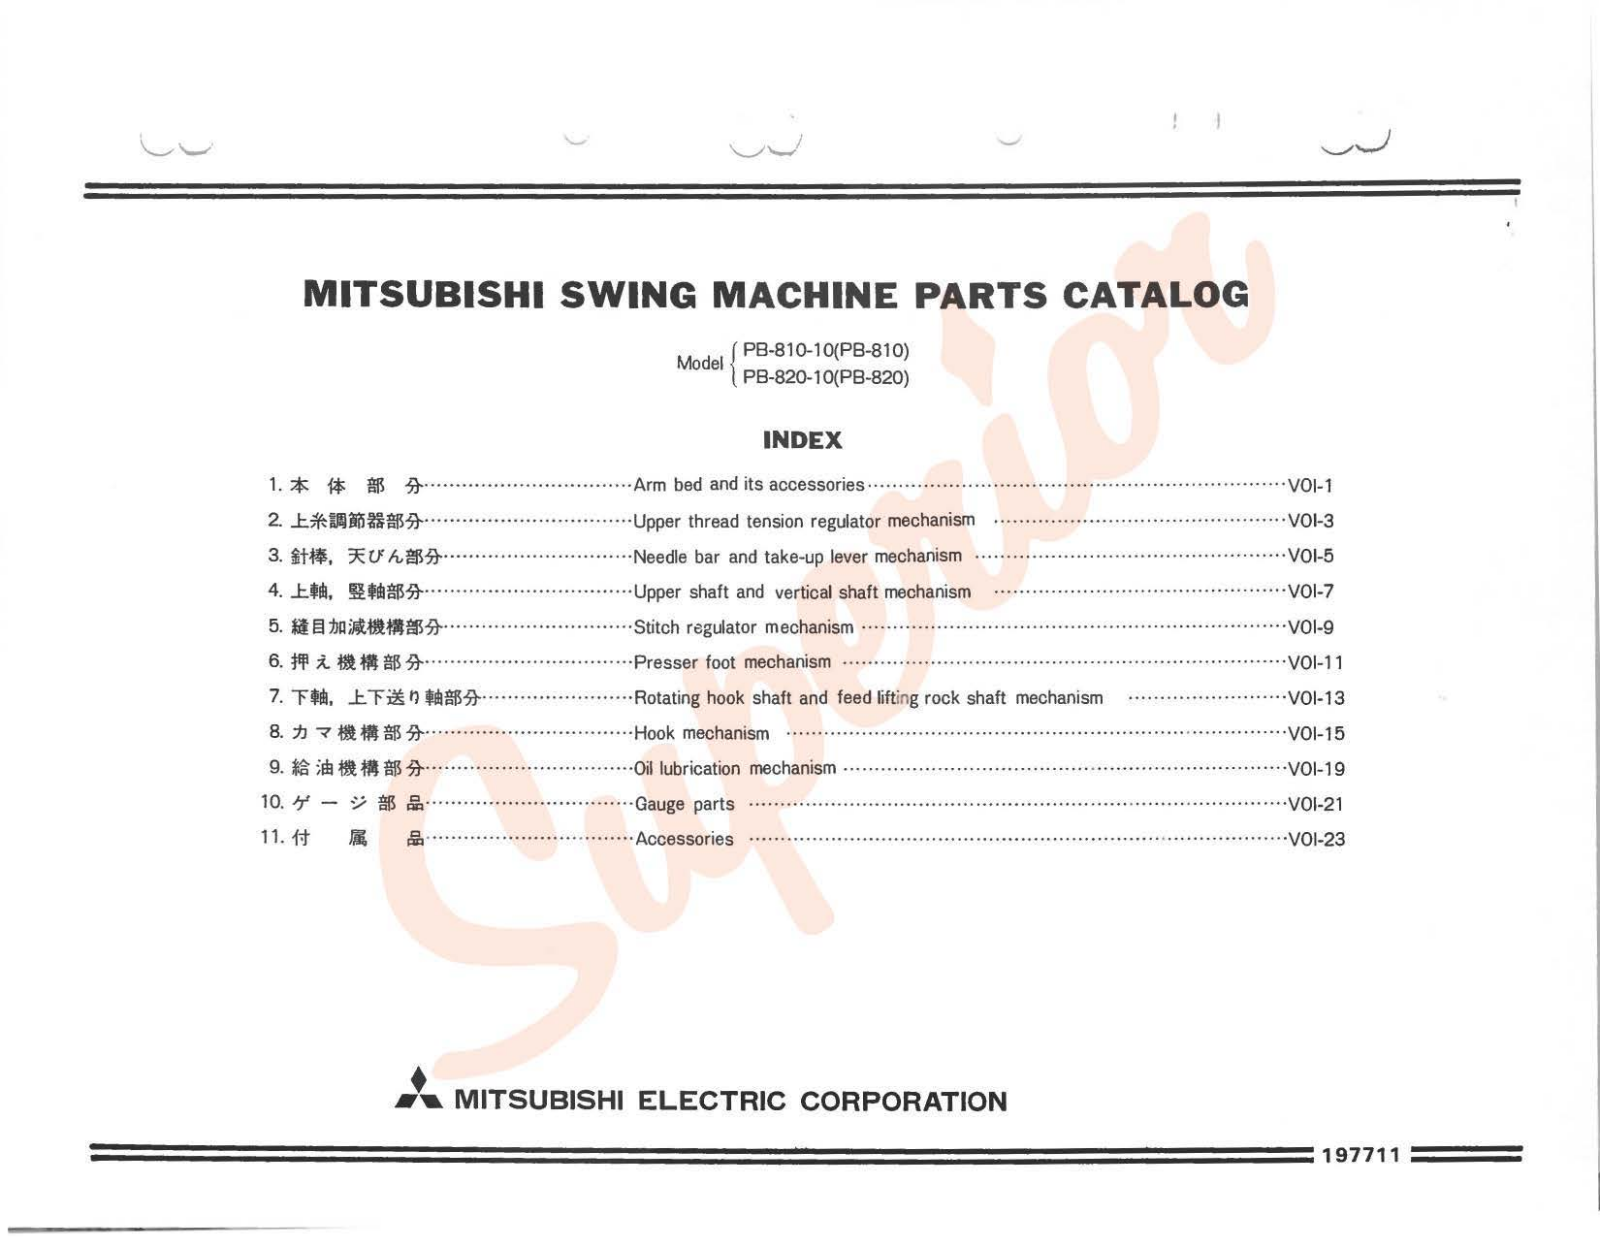 Mitsubishi PB-810-10, PB-820-10 Manual